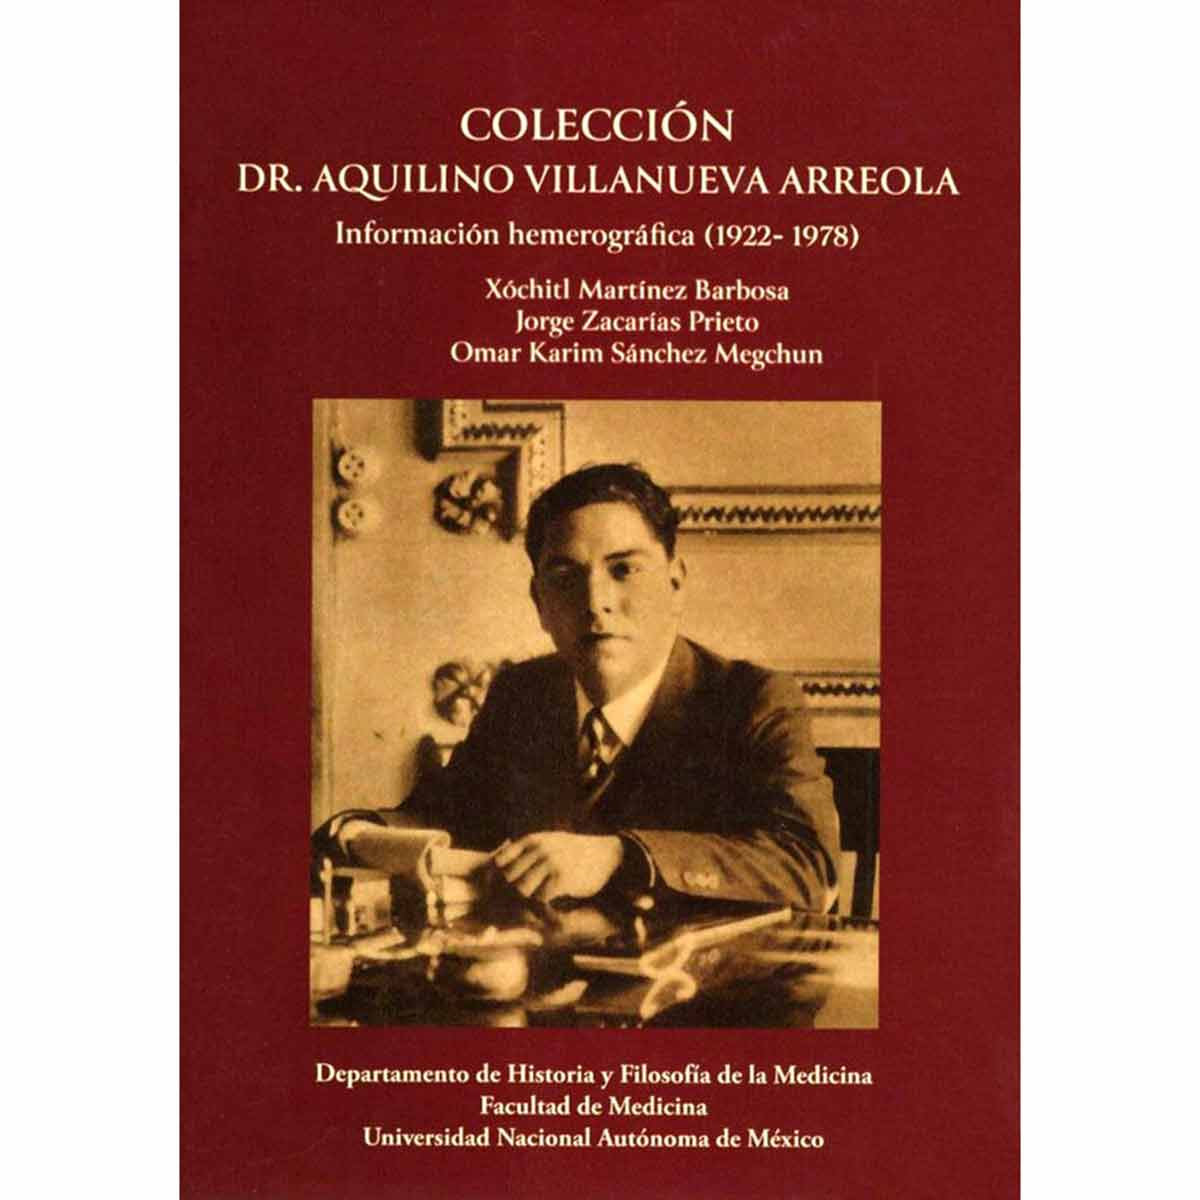 COLECCIÓN DR. AQUILINO VILLANUEVA ARREOLA INFORMACIÓN HEMEROGRÁFICA (1922-1978)